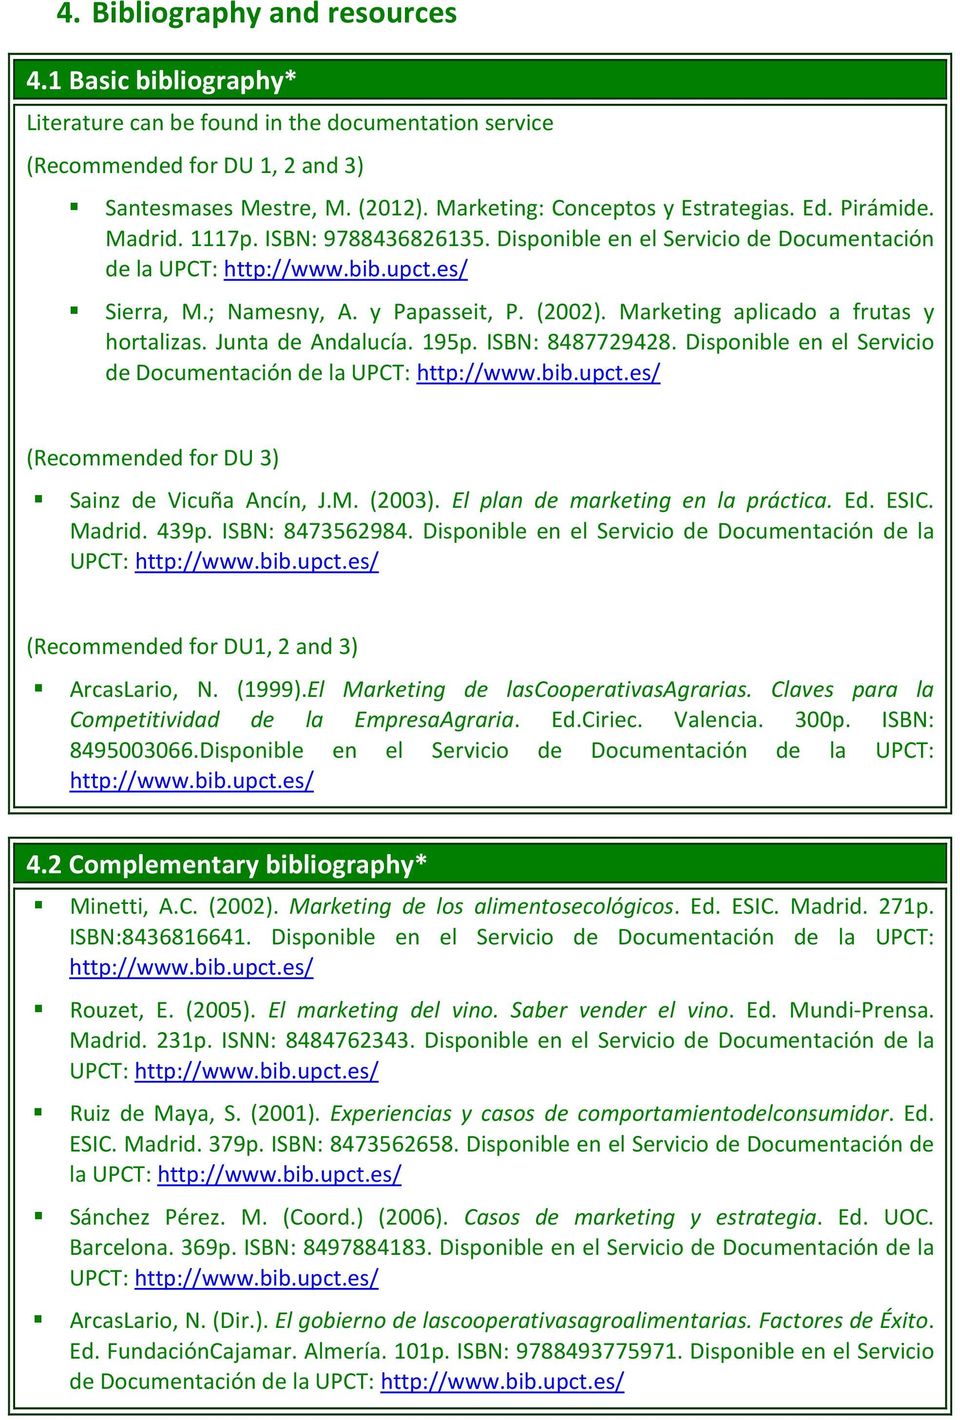 y Papasseit, P. (2002). Marketing aplicado a frutas y hortalizas. Junta de Andalucía. 195p. ISBN: 8487729428. Disponible en el Servicio de Documentación de la UPCT: http://www.bib.upct.